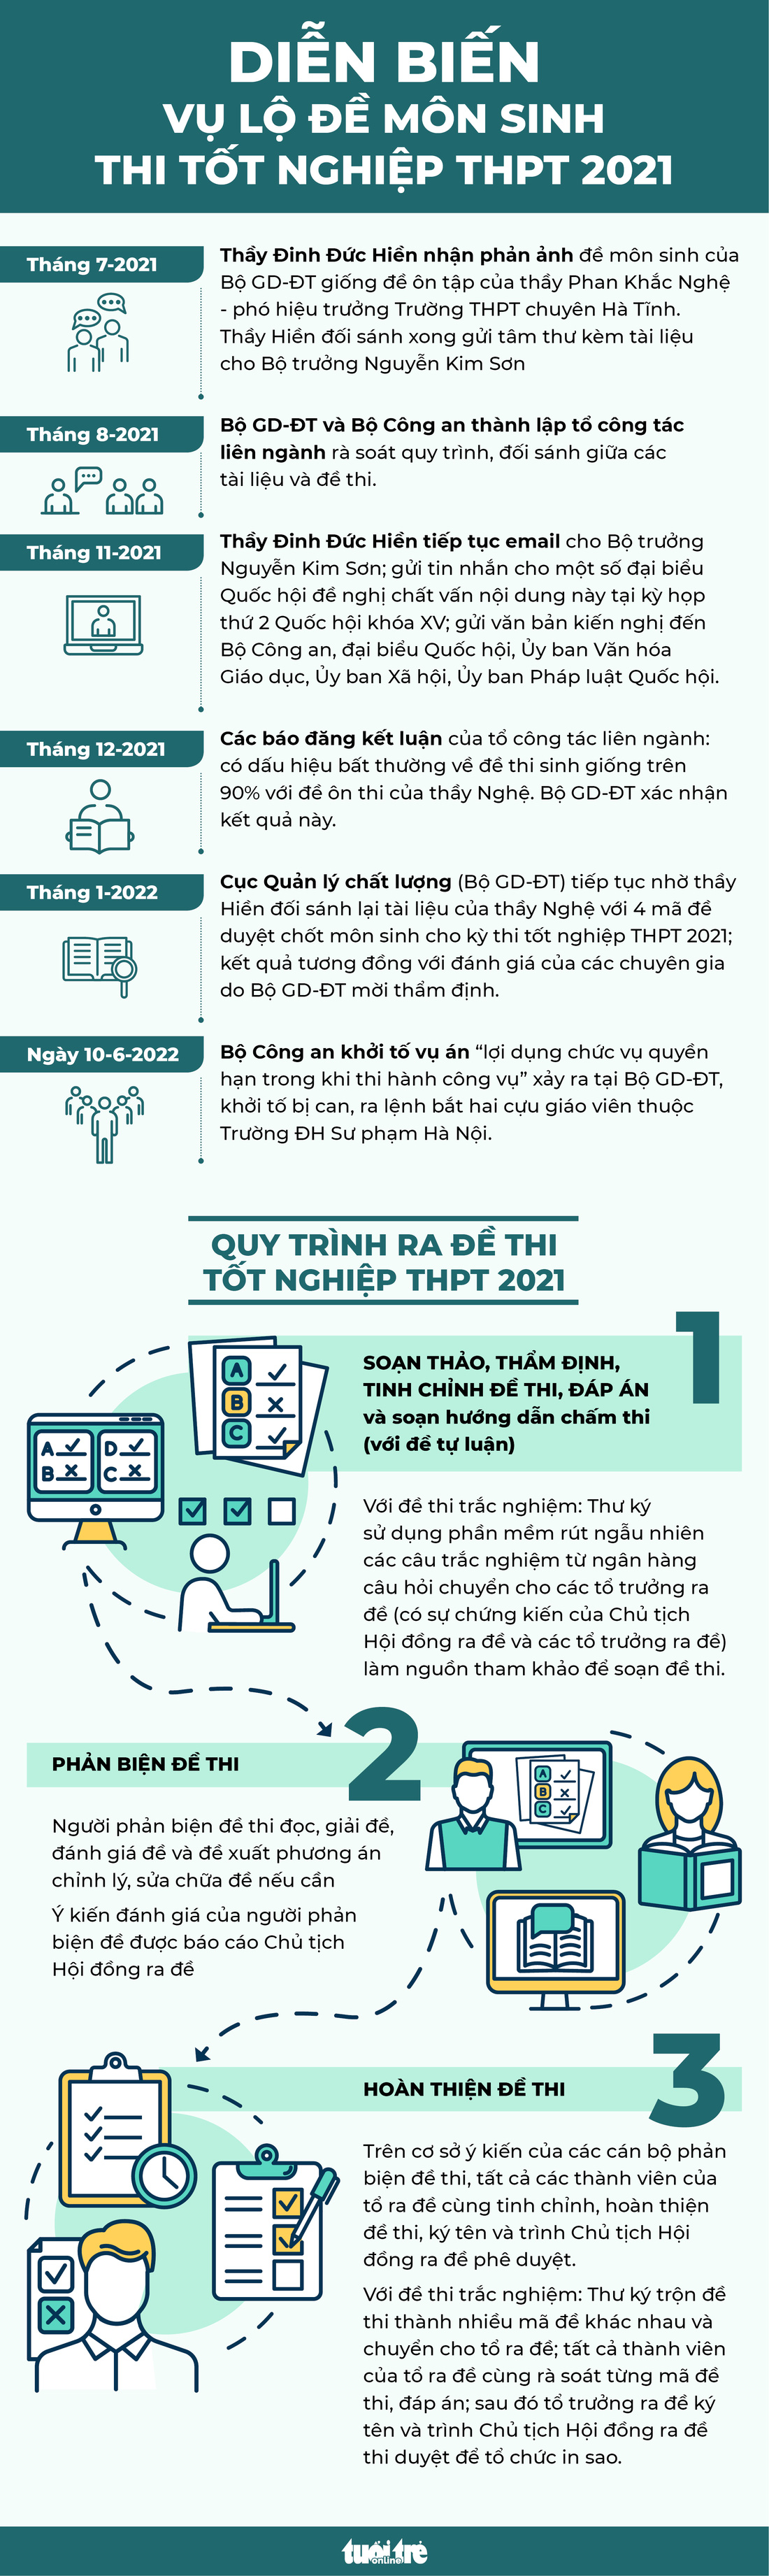 Infographic: Toàn cảnh vụ lộ đề môn sinh kỳ thi tốt nghiệp THPT 2021 - Ảnh 1.